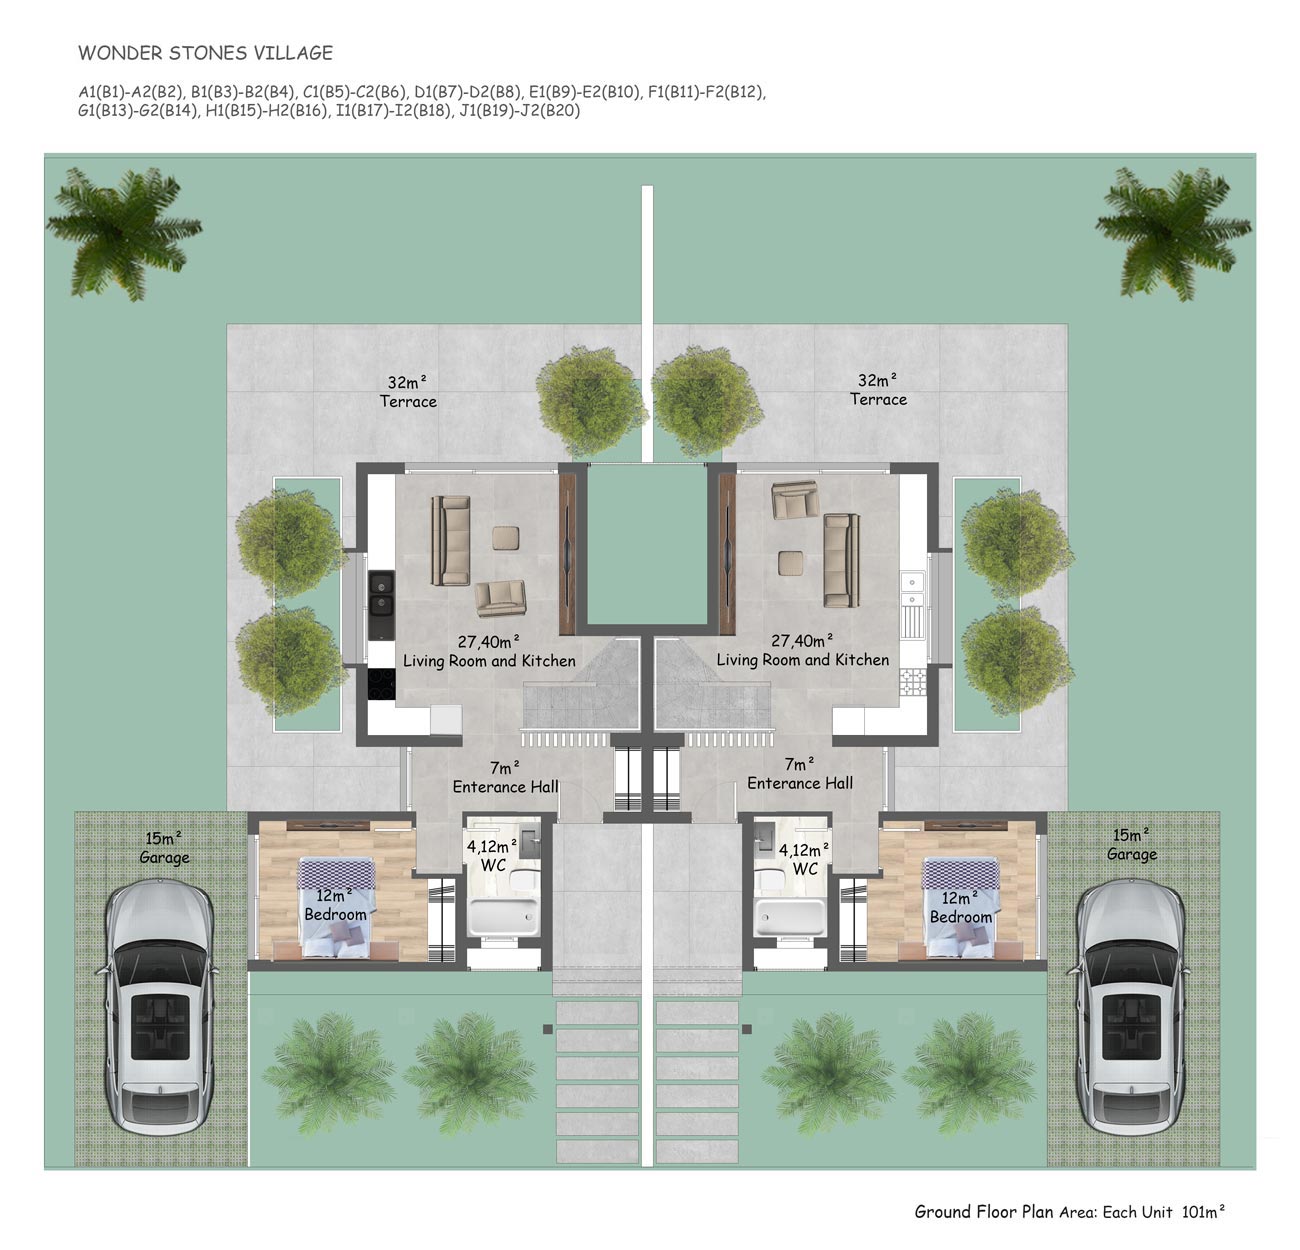 Floor Plan - 3 bedroom twin villa / ground floor